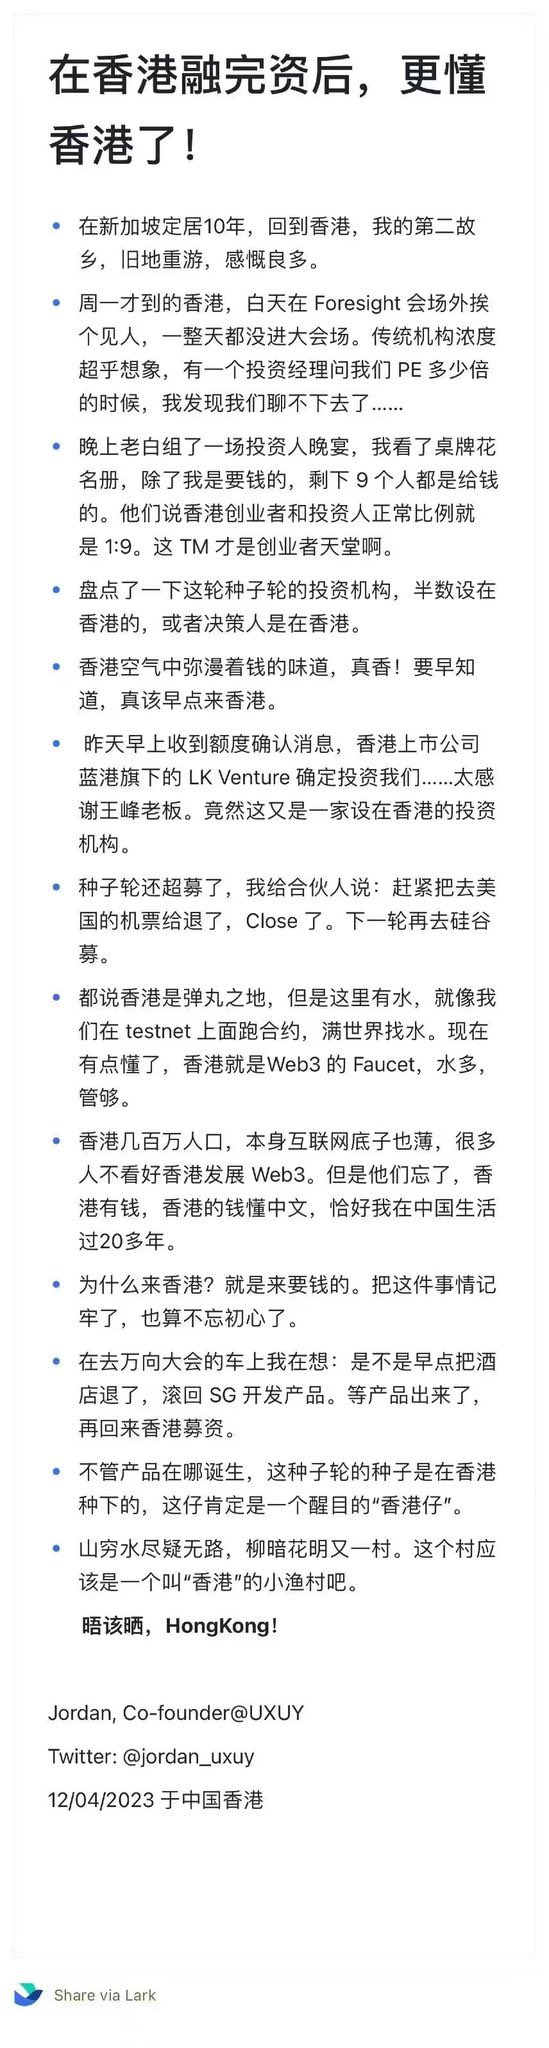 2023香港Web3嘉年华小作文合集：华人Web3迎来“黄金时代”？